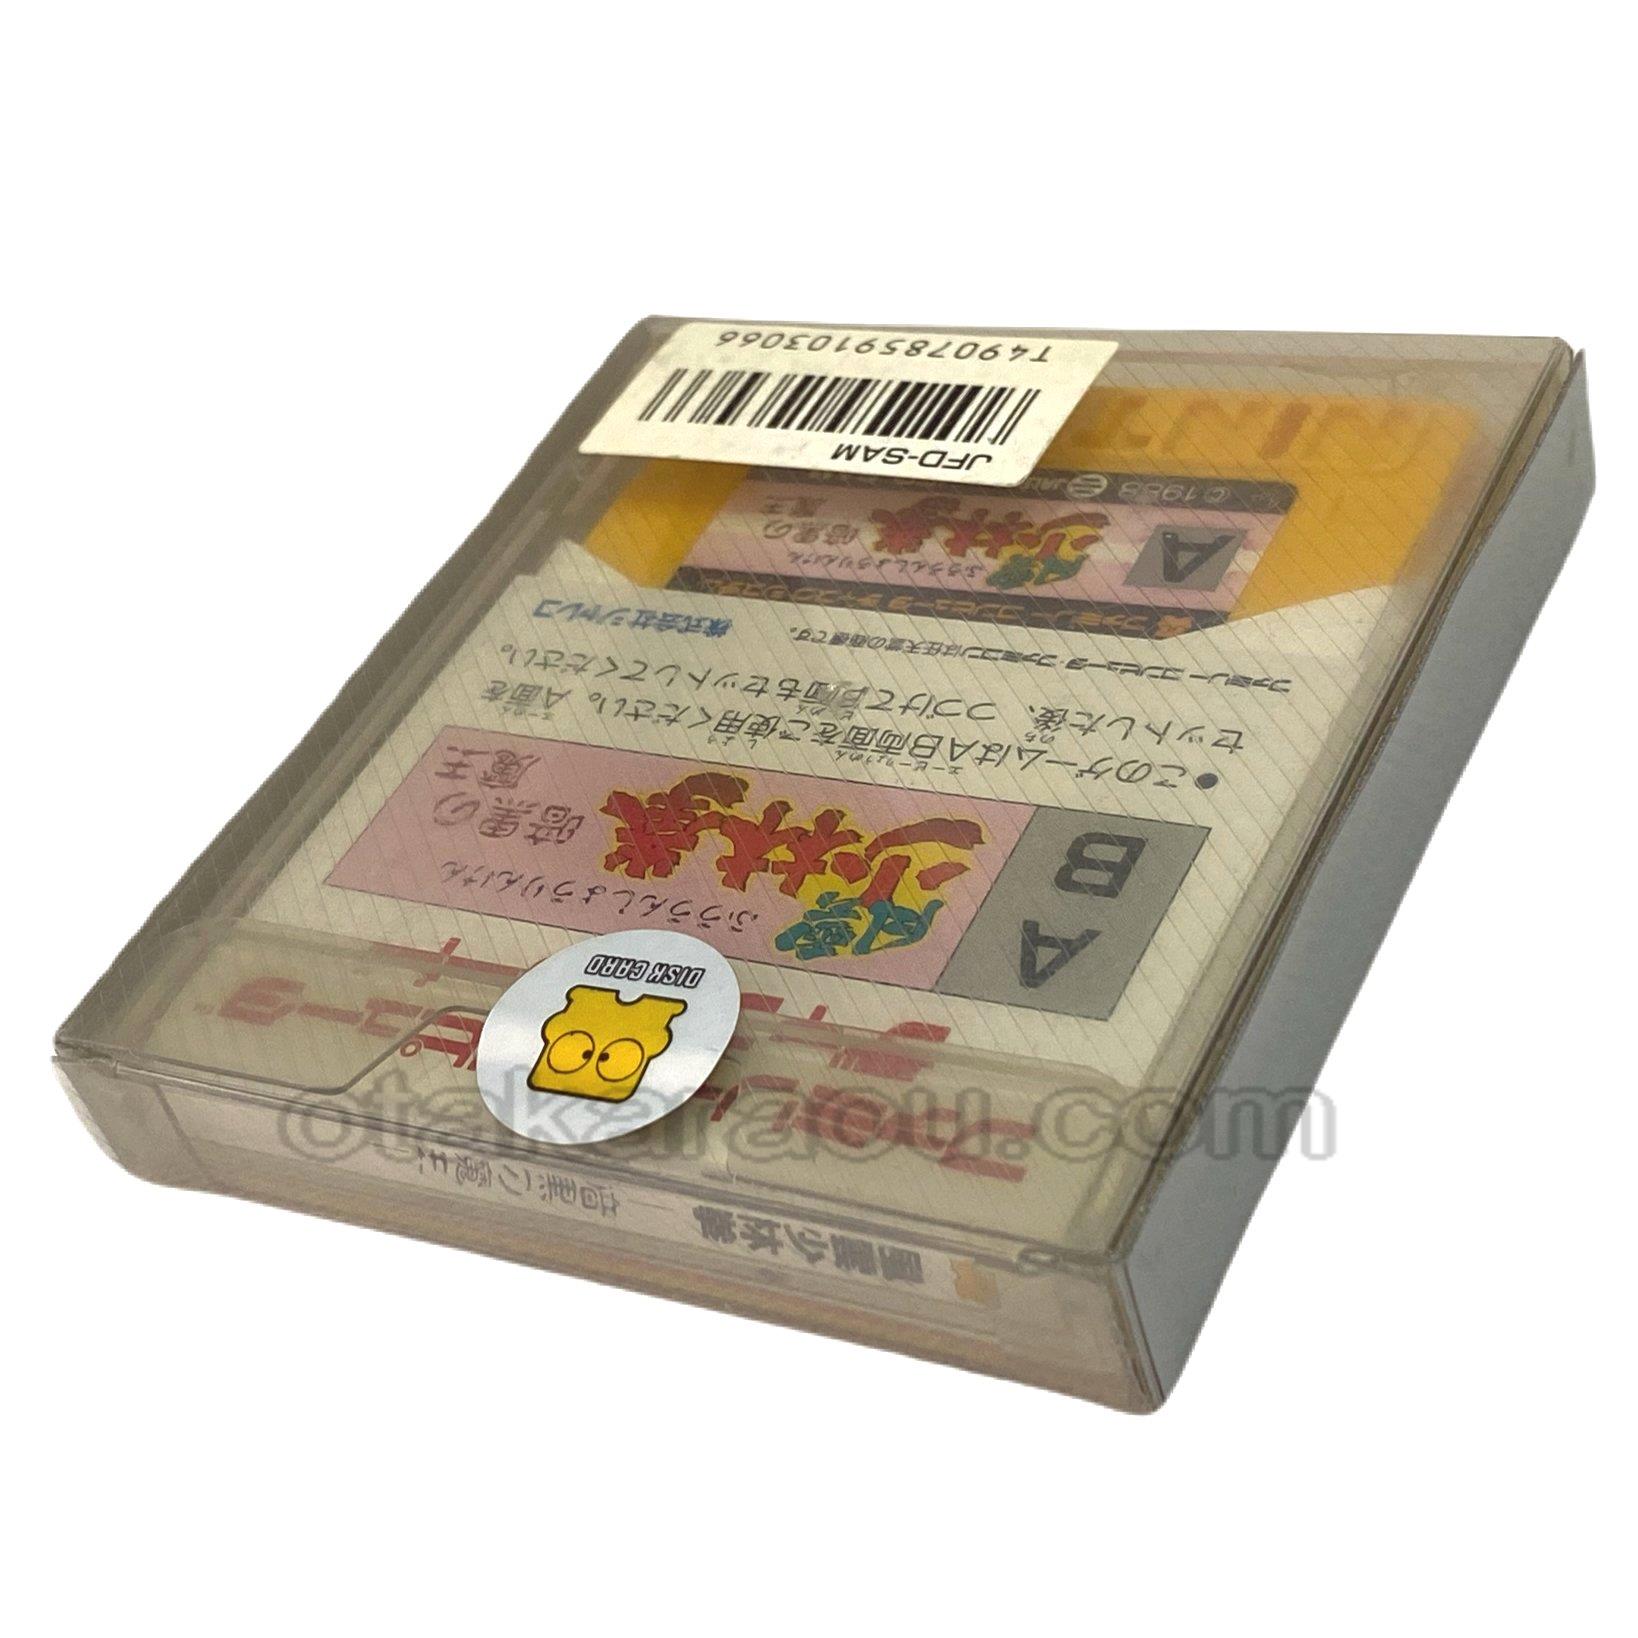 ファミコン ディスクシステムソフト 風雲少林拳 暗黒の魔王 新品未使用品 カードを販売 買取なら ファミコンショップお宝王